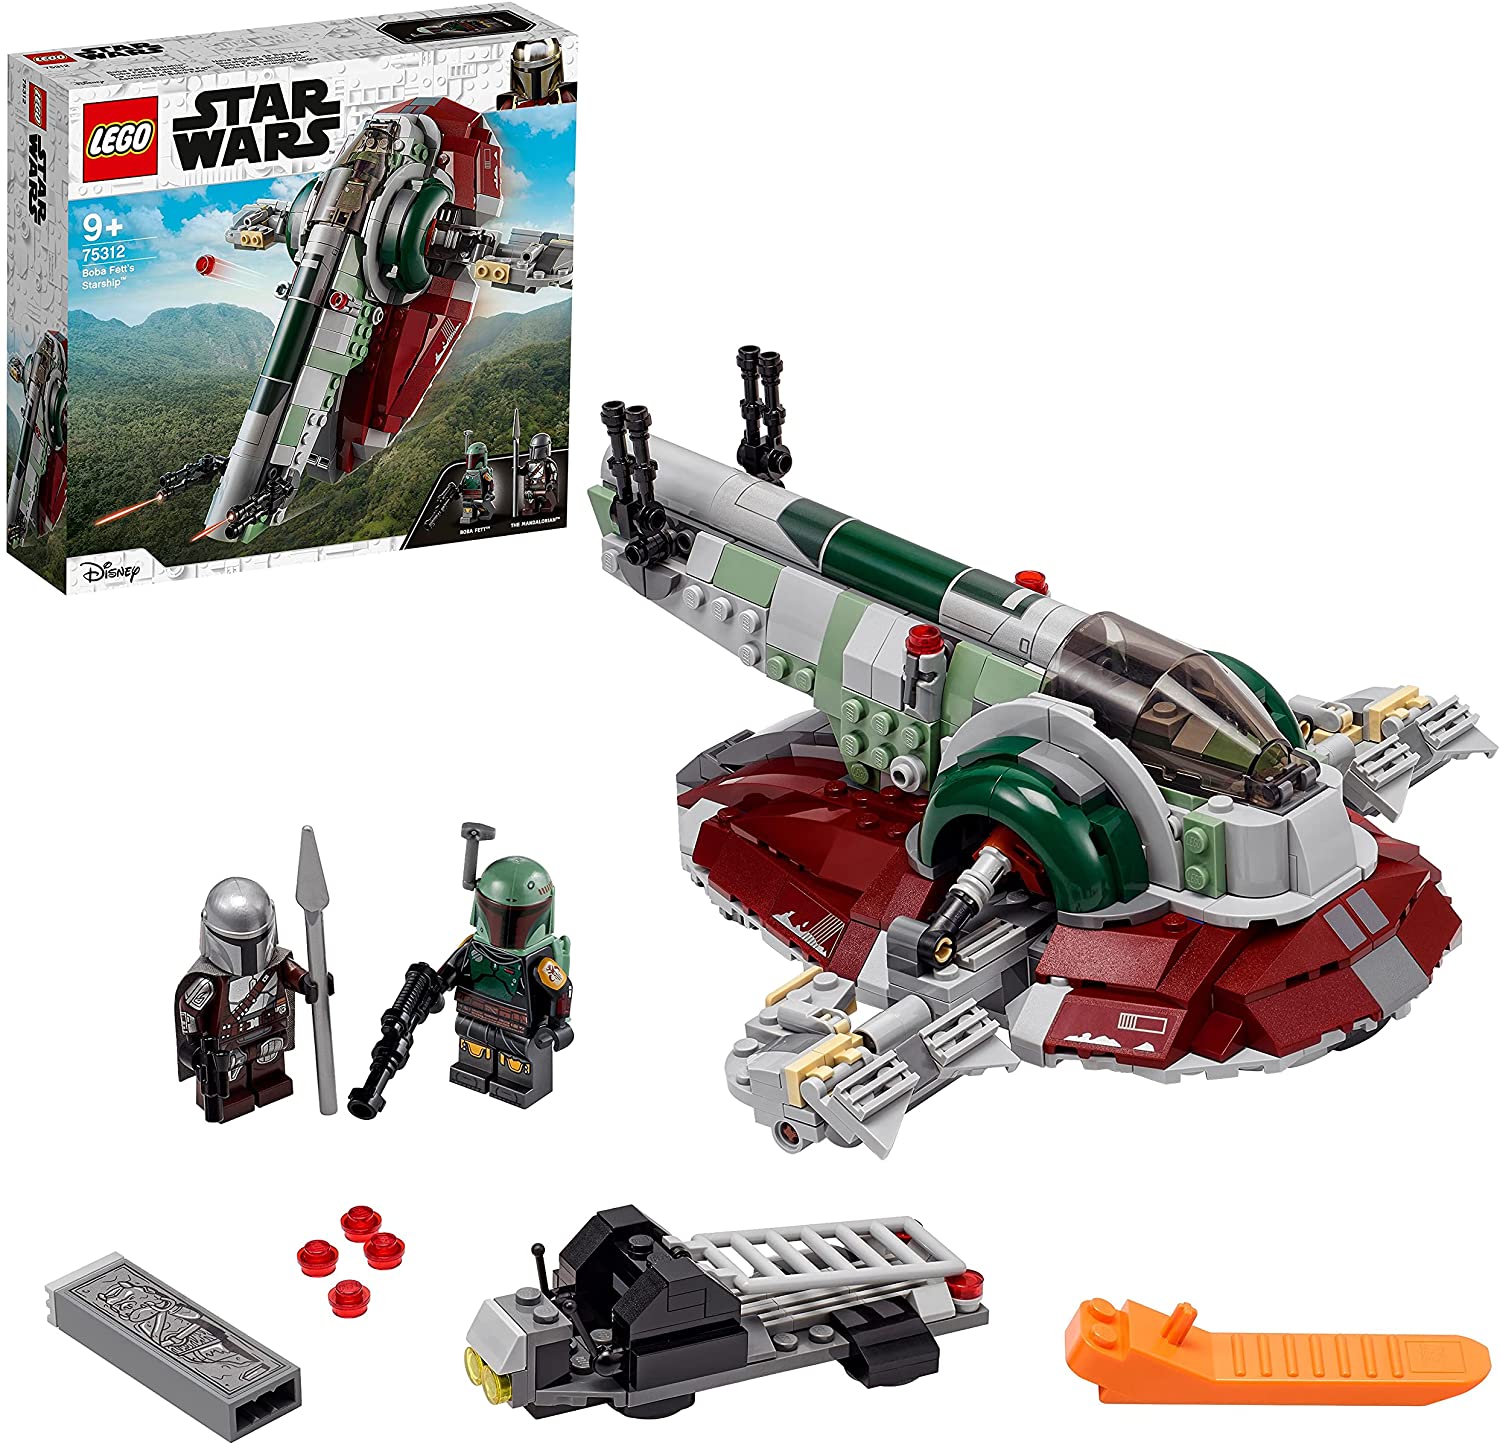 LEGO 75312 Star Wars Boba Fetts Starship™ Construction Kit for Children fro